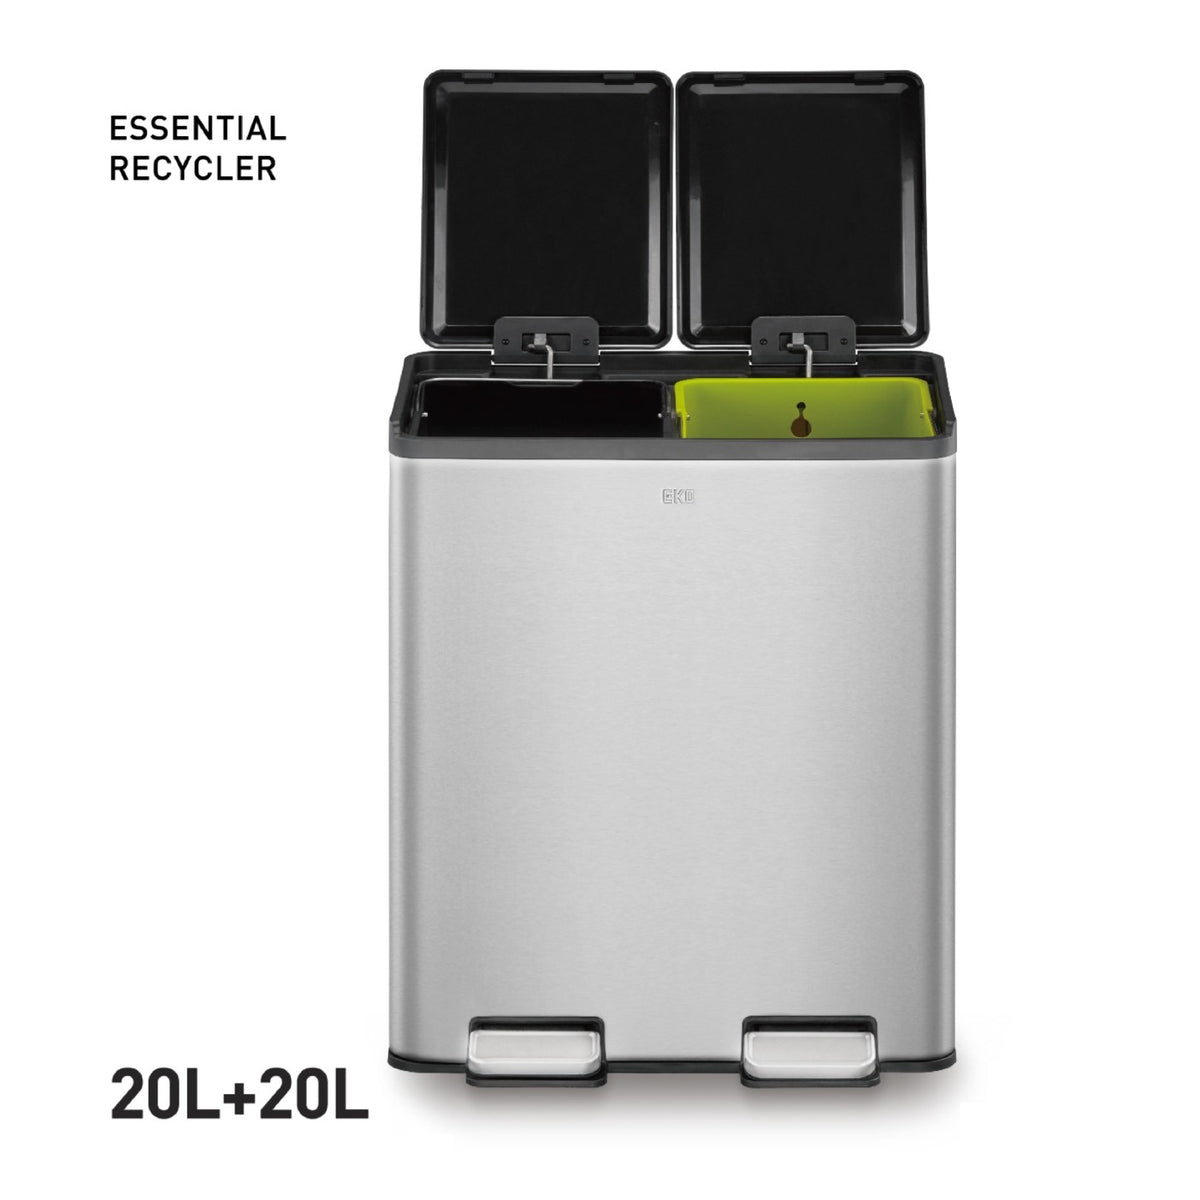 Tacho basura Essential reciclaje 20L+20L pedal